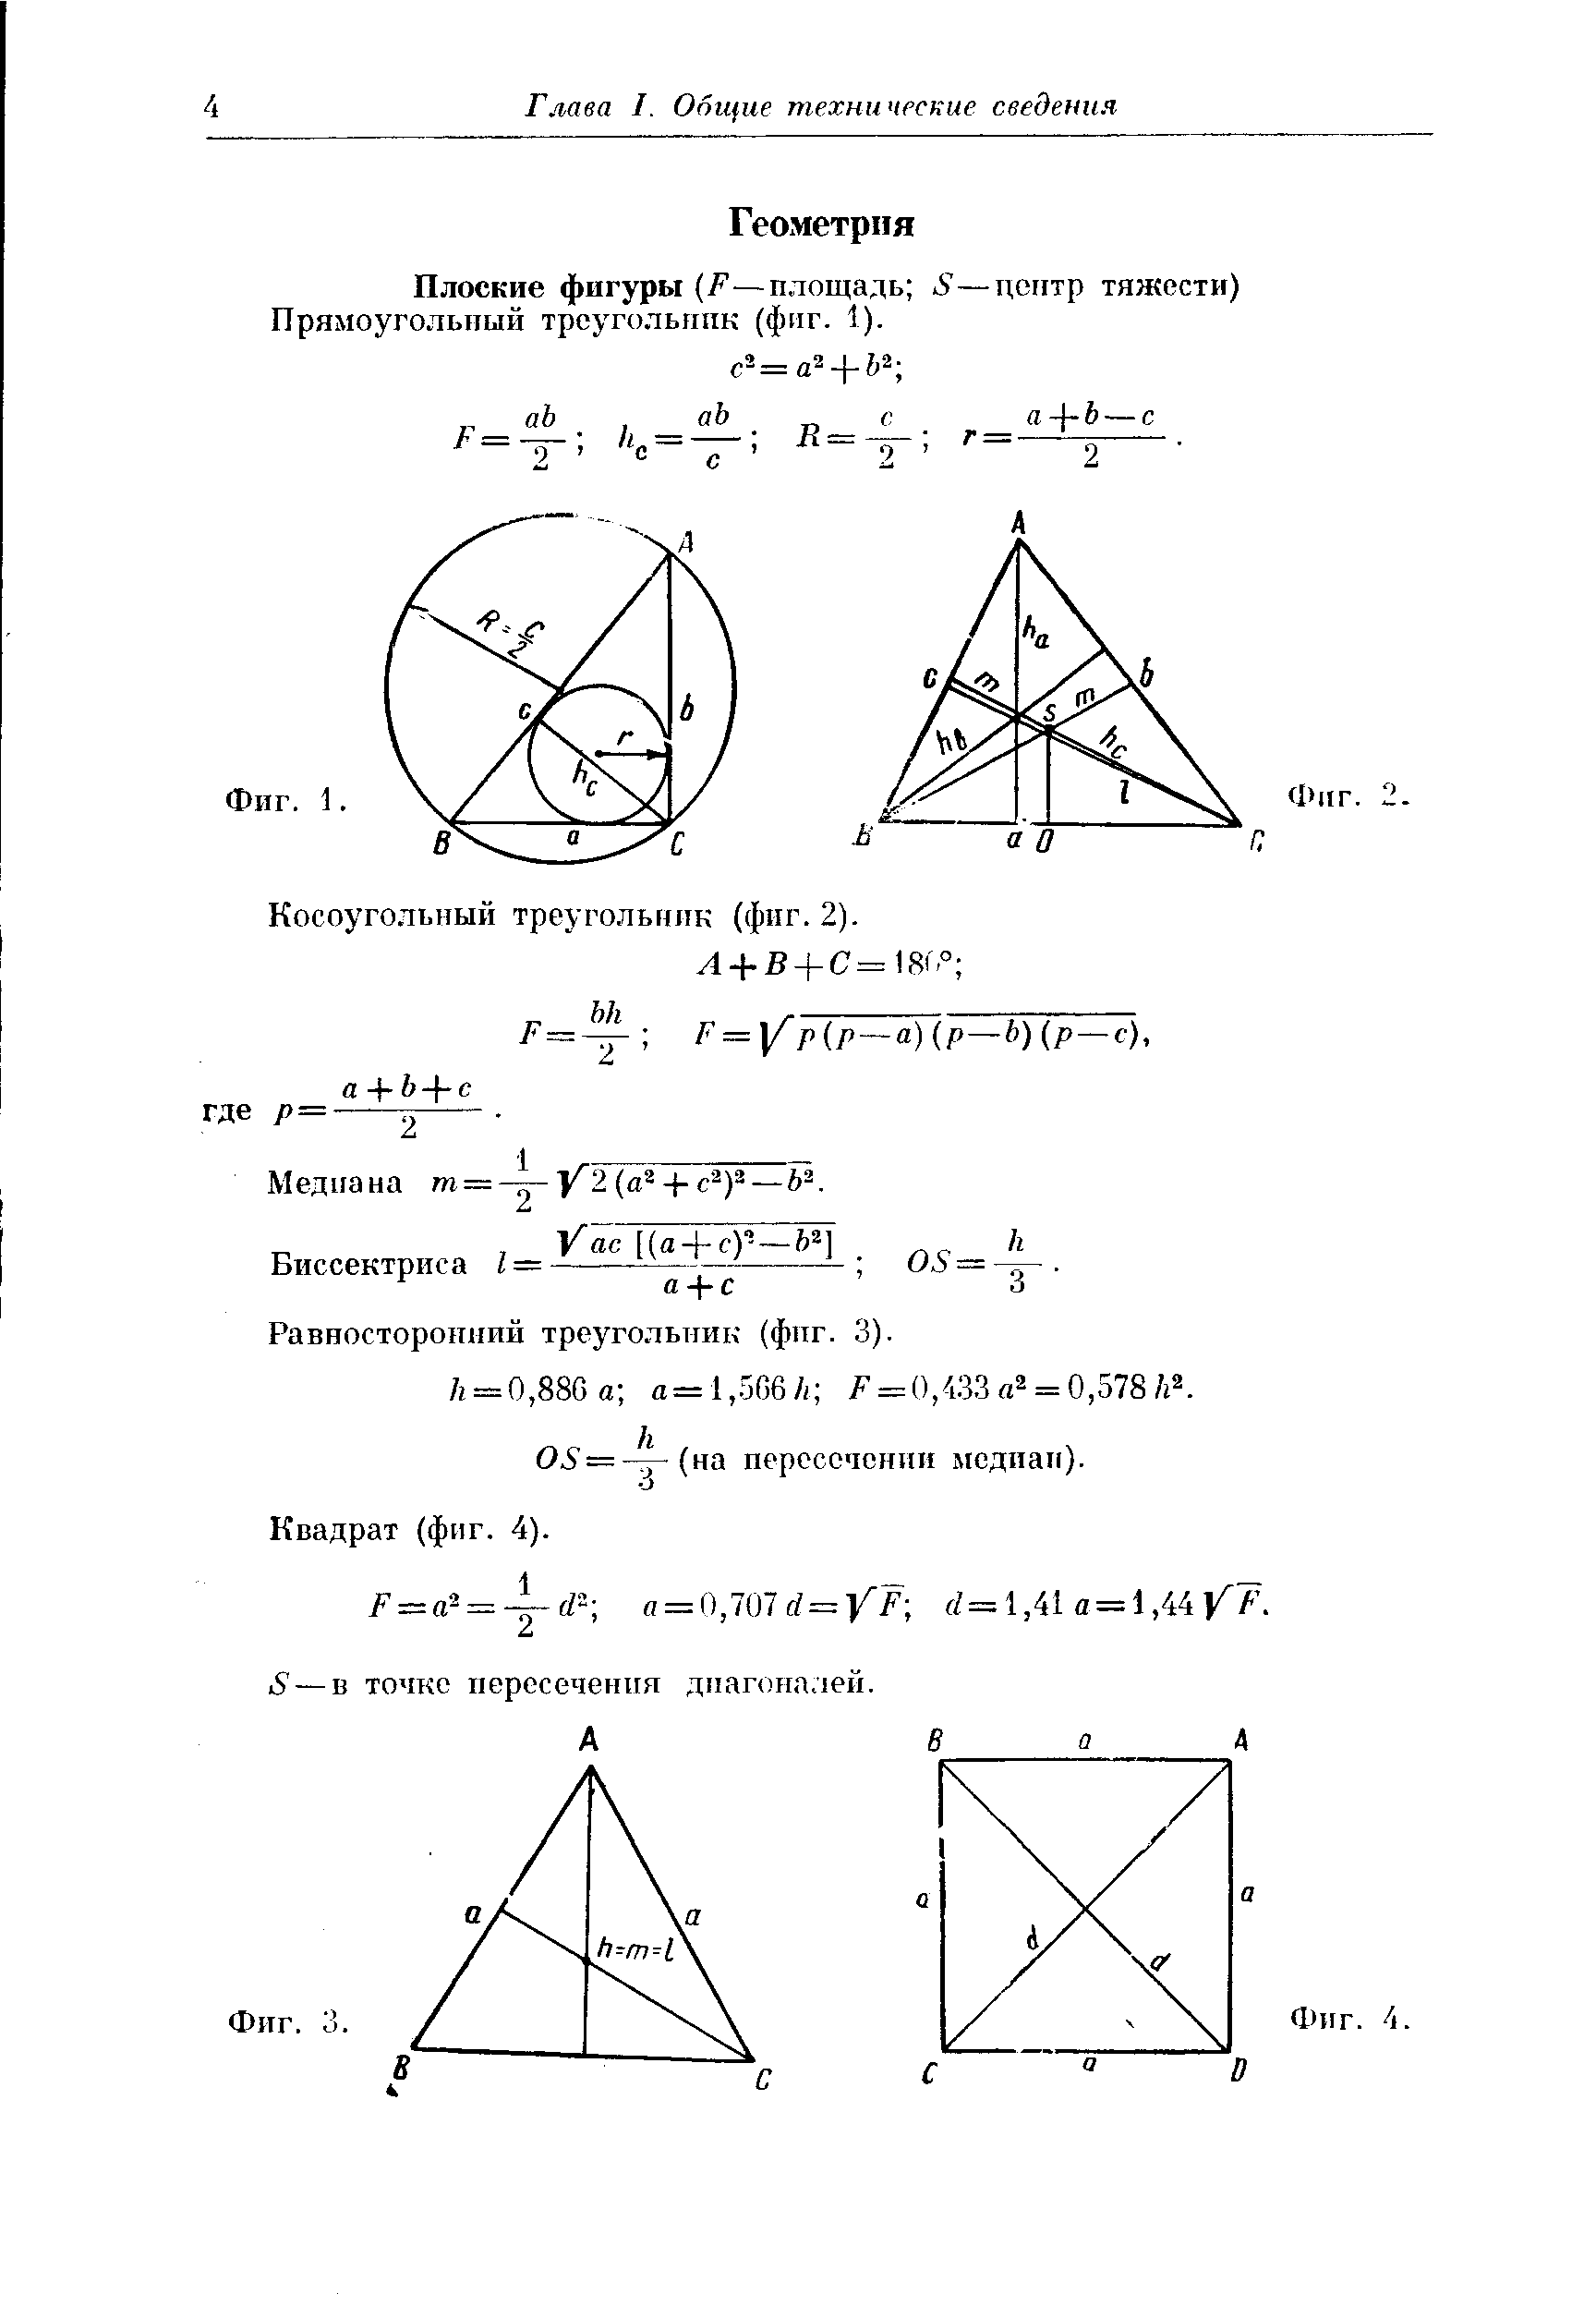 Плоские фигуры F—площадь S—центр тяжести) Прямоугольный треугольник (фпг. 1).